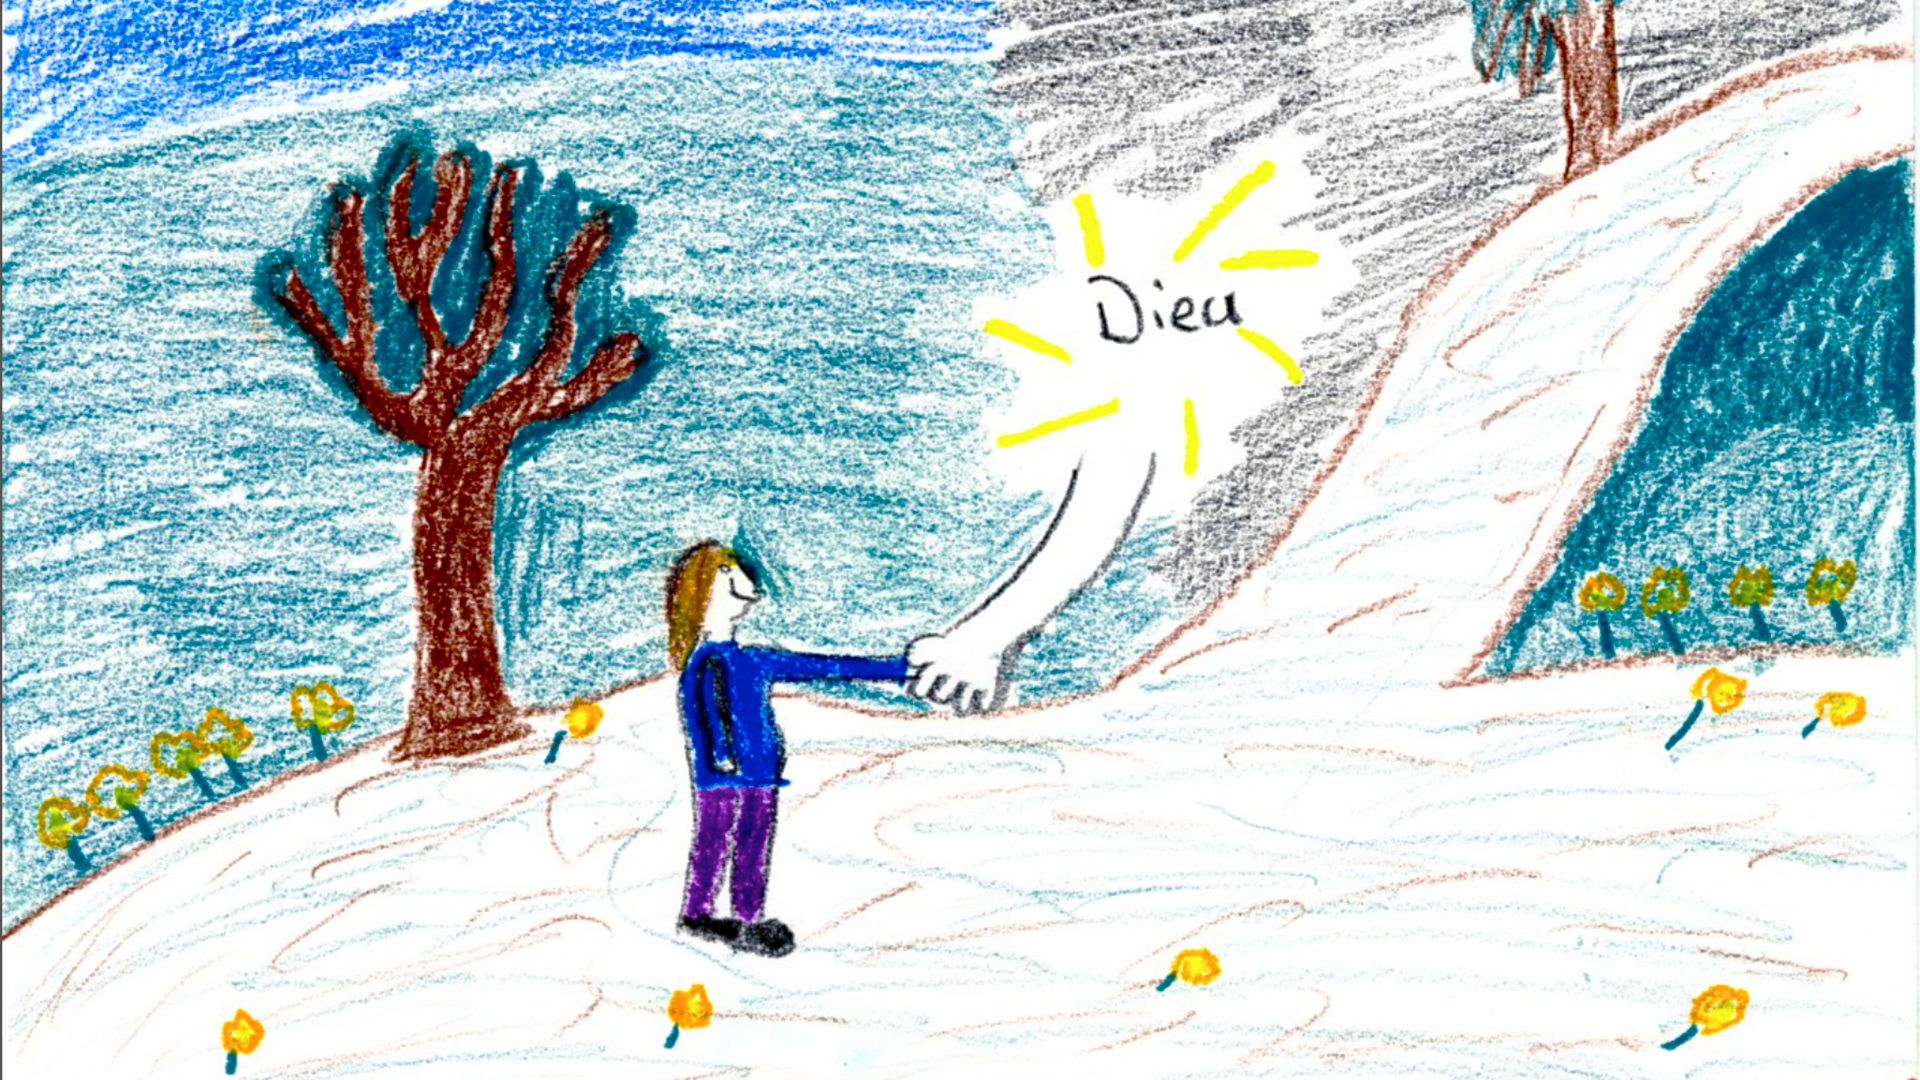 "Dieu": c'est une main qui guide sur le bon chemin, pour cette fille de 11 ans, du canton de Berne | étude ddd.unil.ch